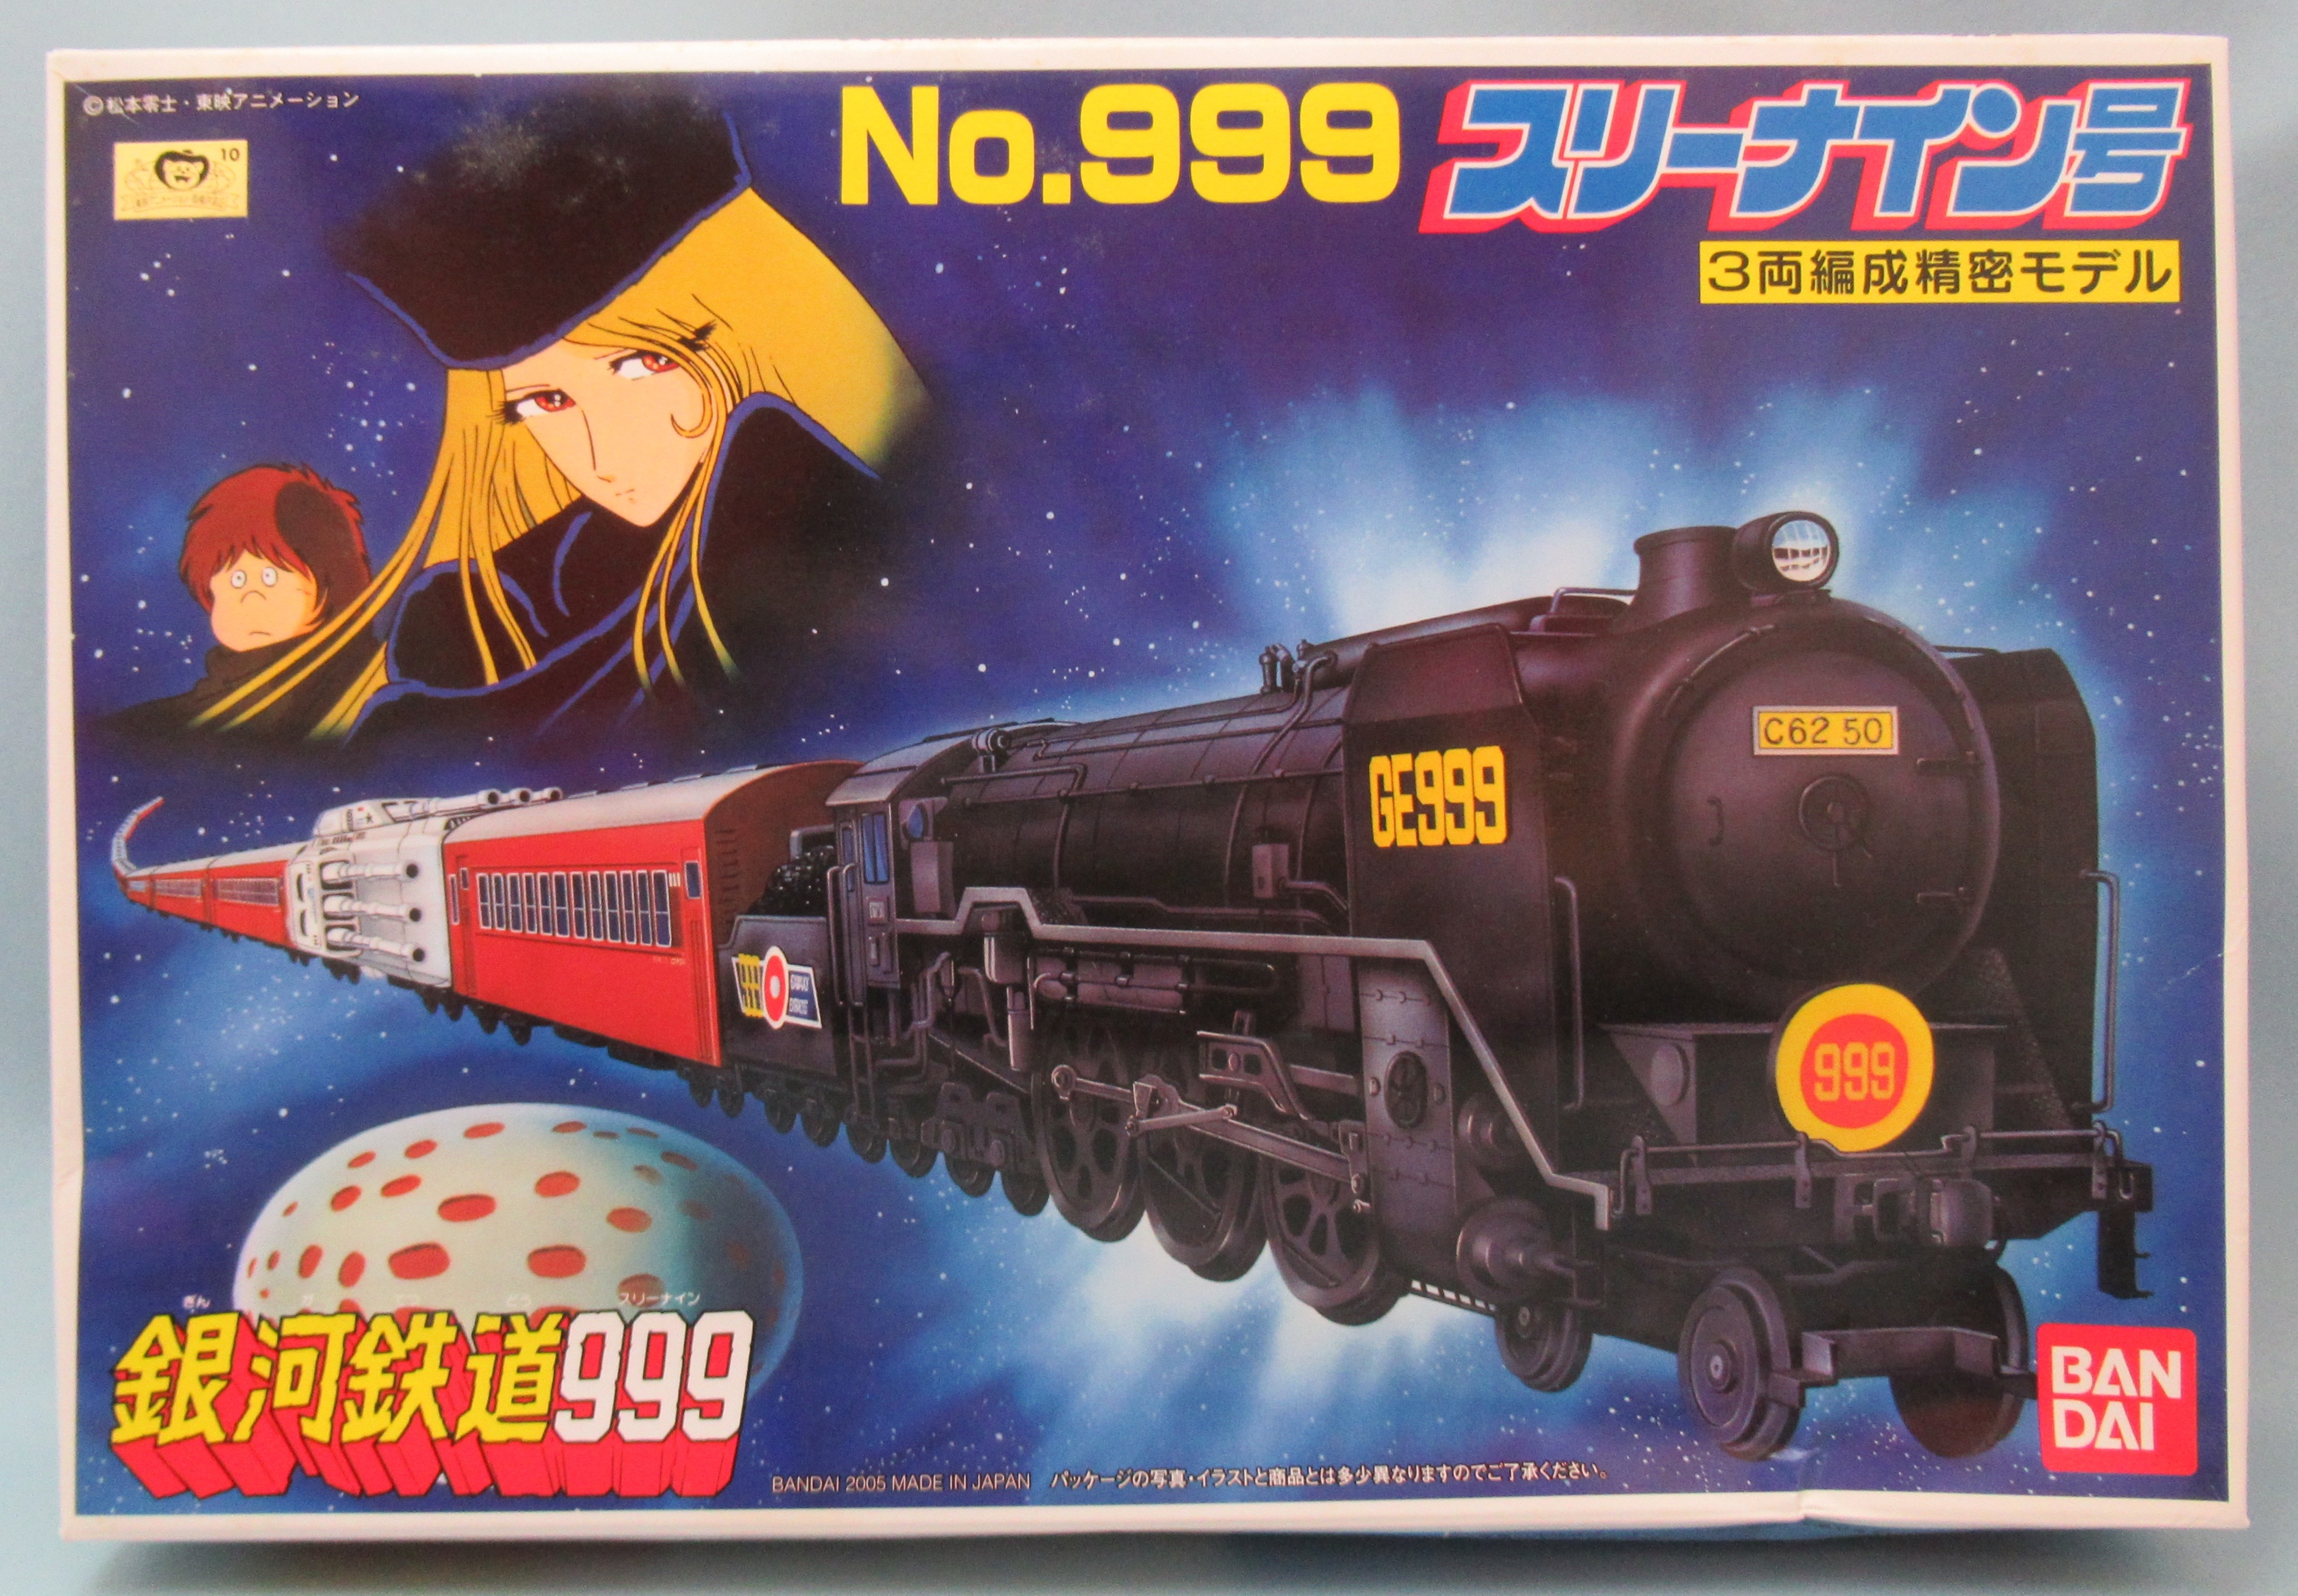 バンダイ 銀河鉄道999 スリーナイン号(3両編成精密モデル 